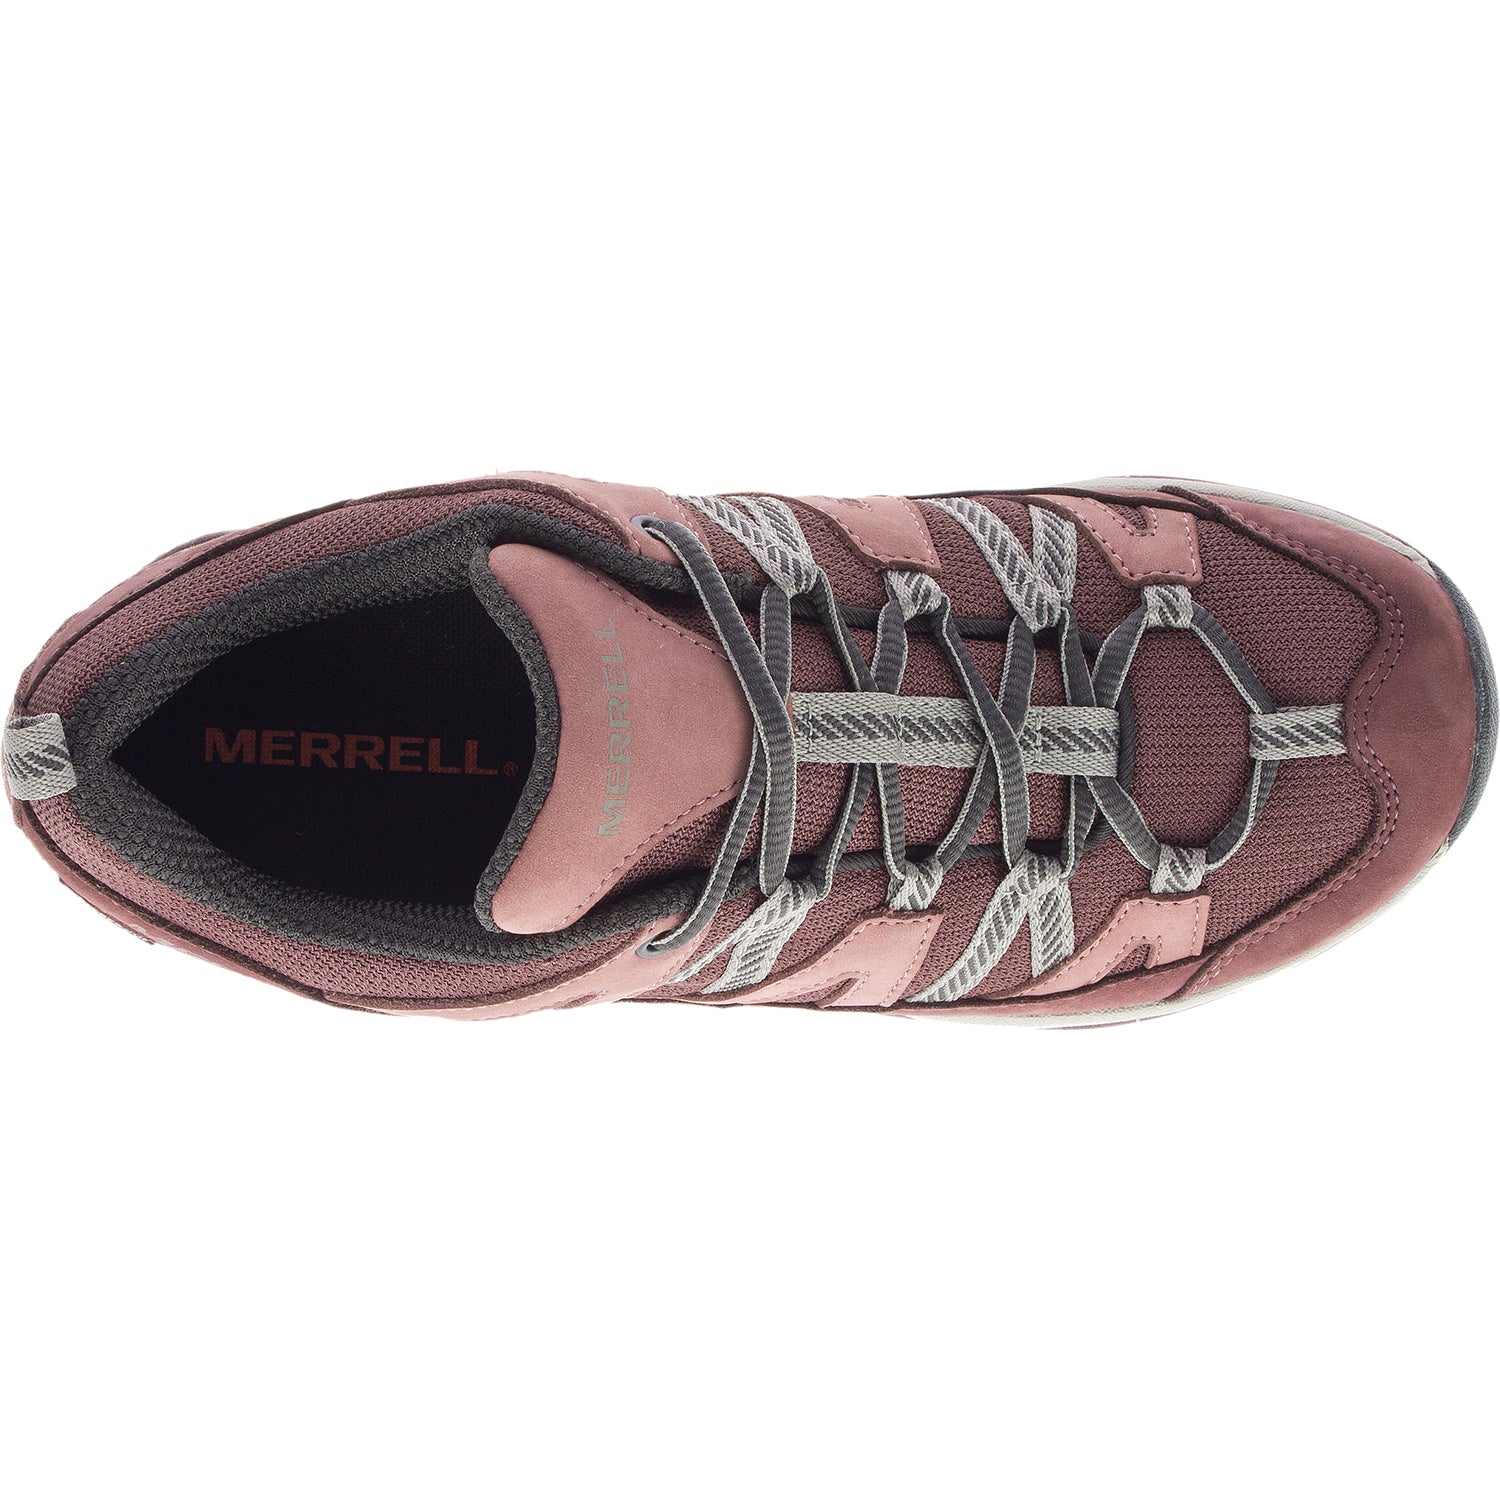 Merrell Siren Sport 3 Marron | Women's Hiking Shoe | Footwear etc.